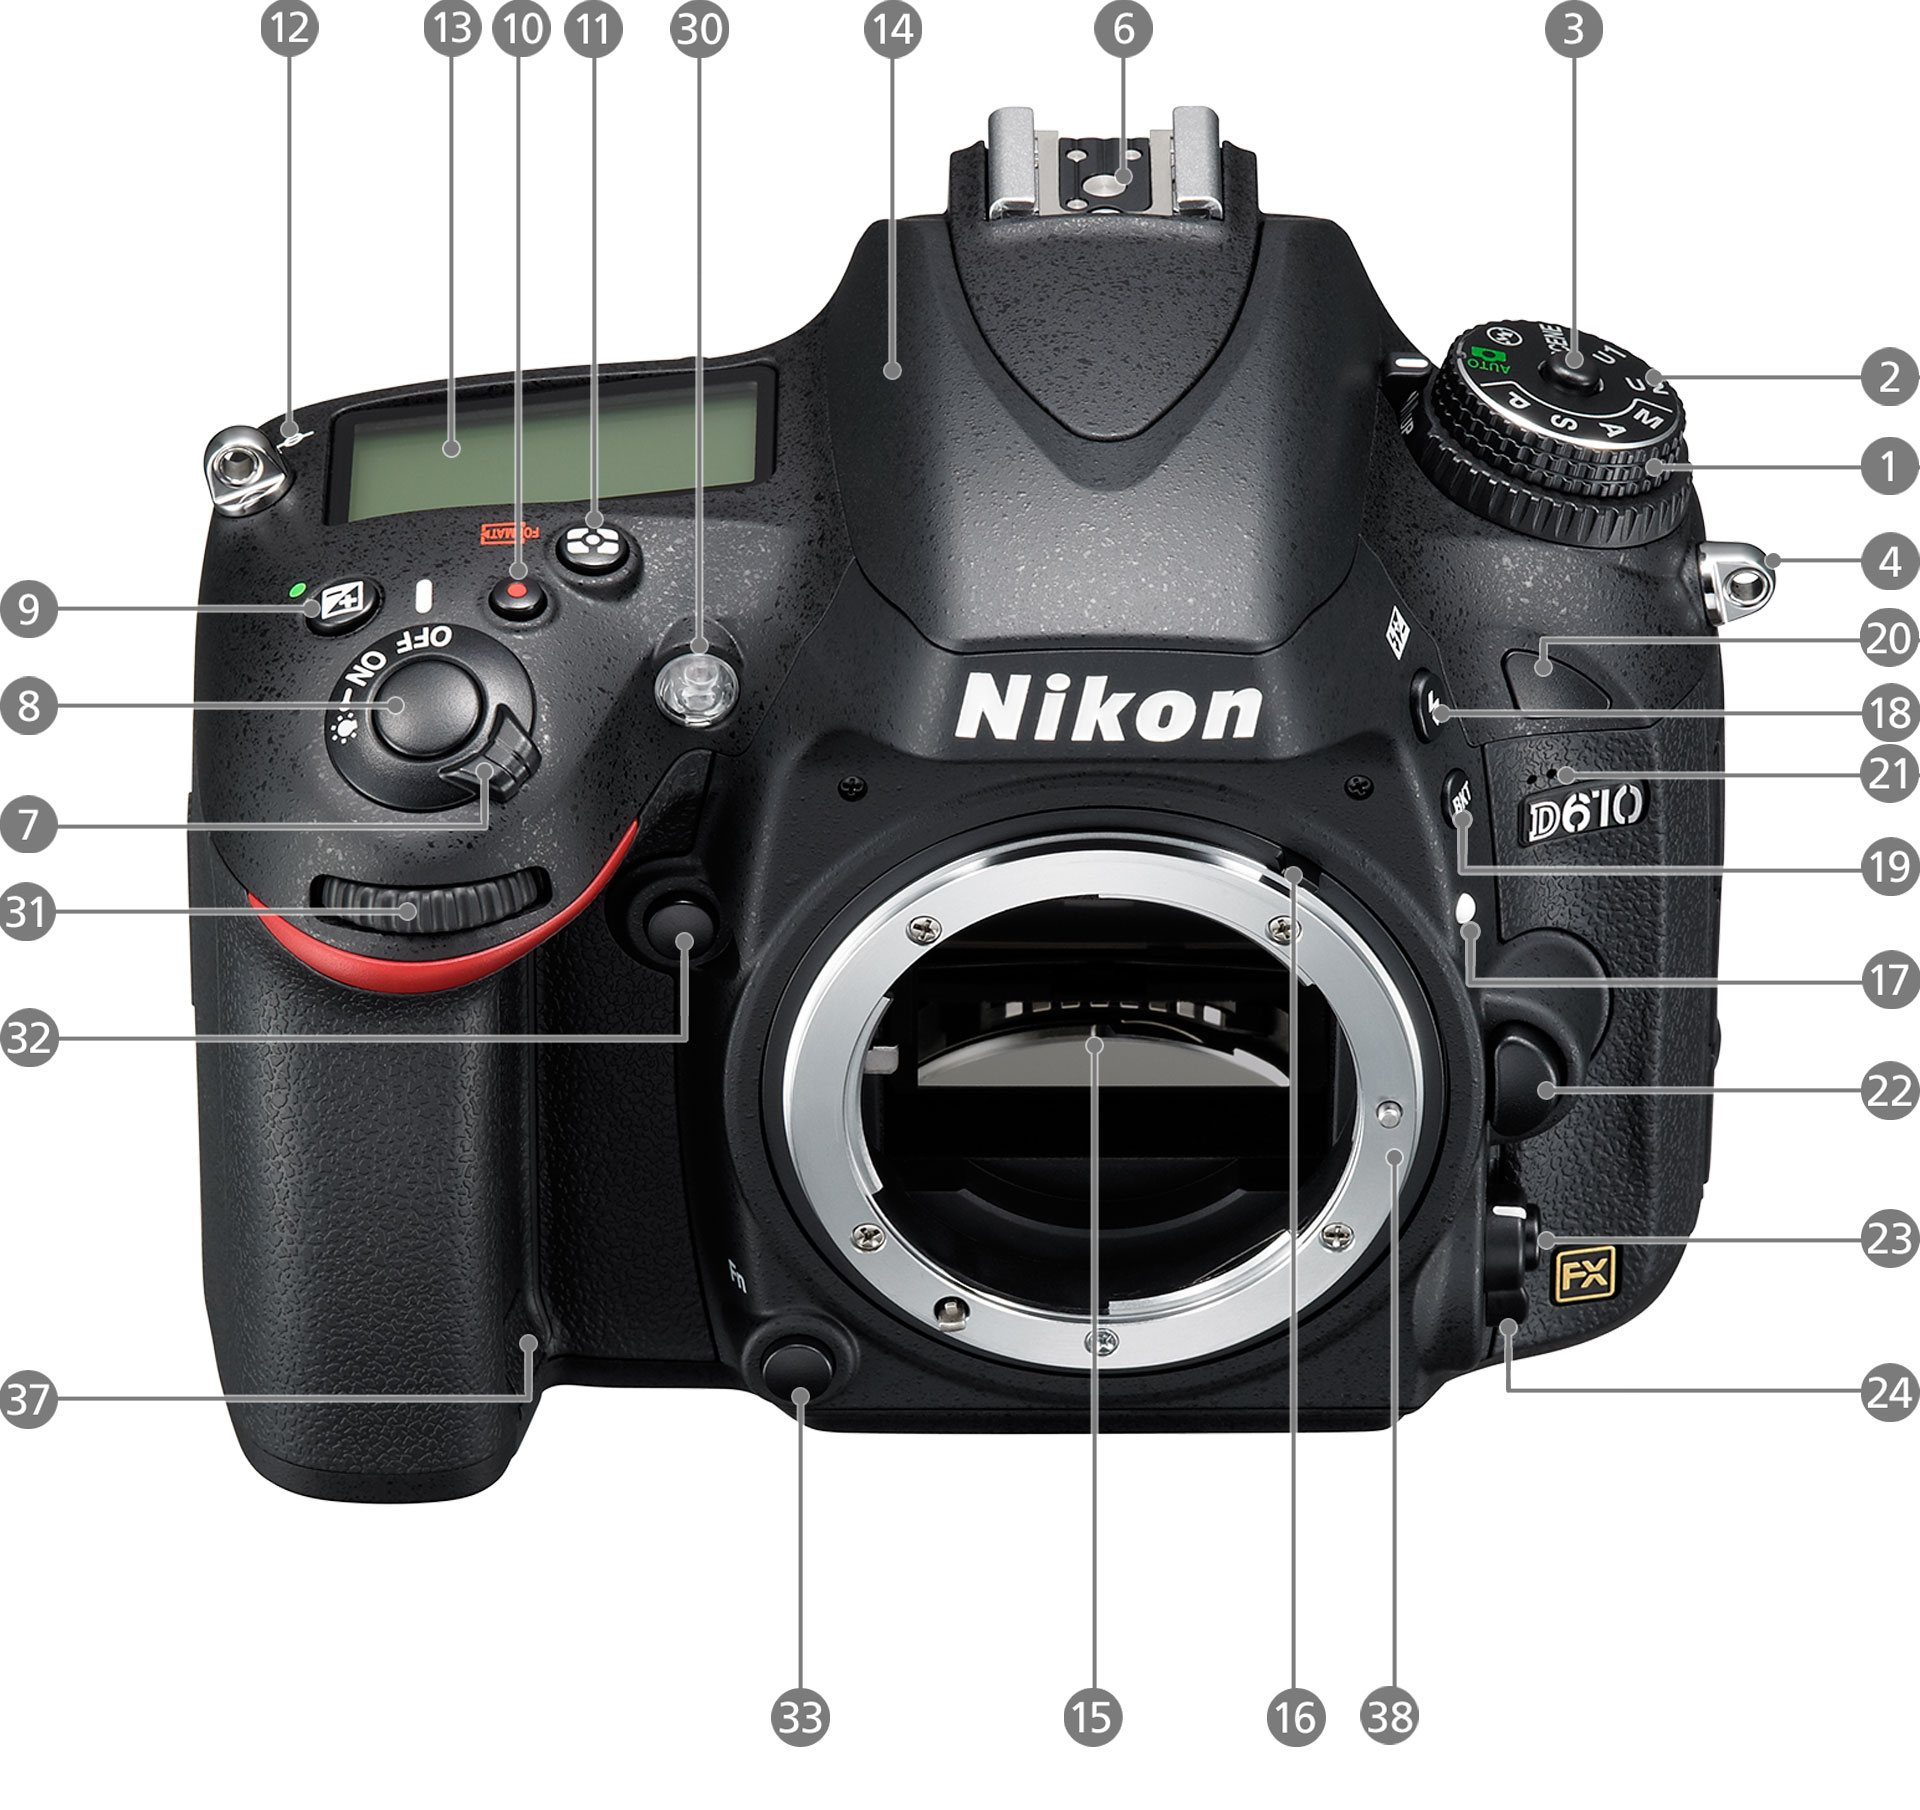 D610 - 各部名称 | 一眼レフカメラ | ニコンイメージング